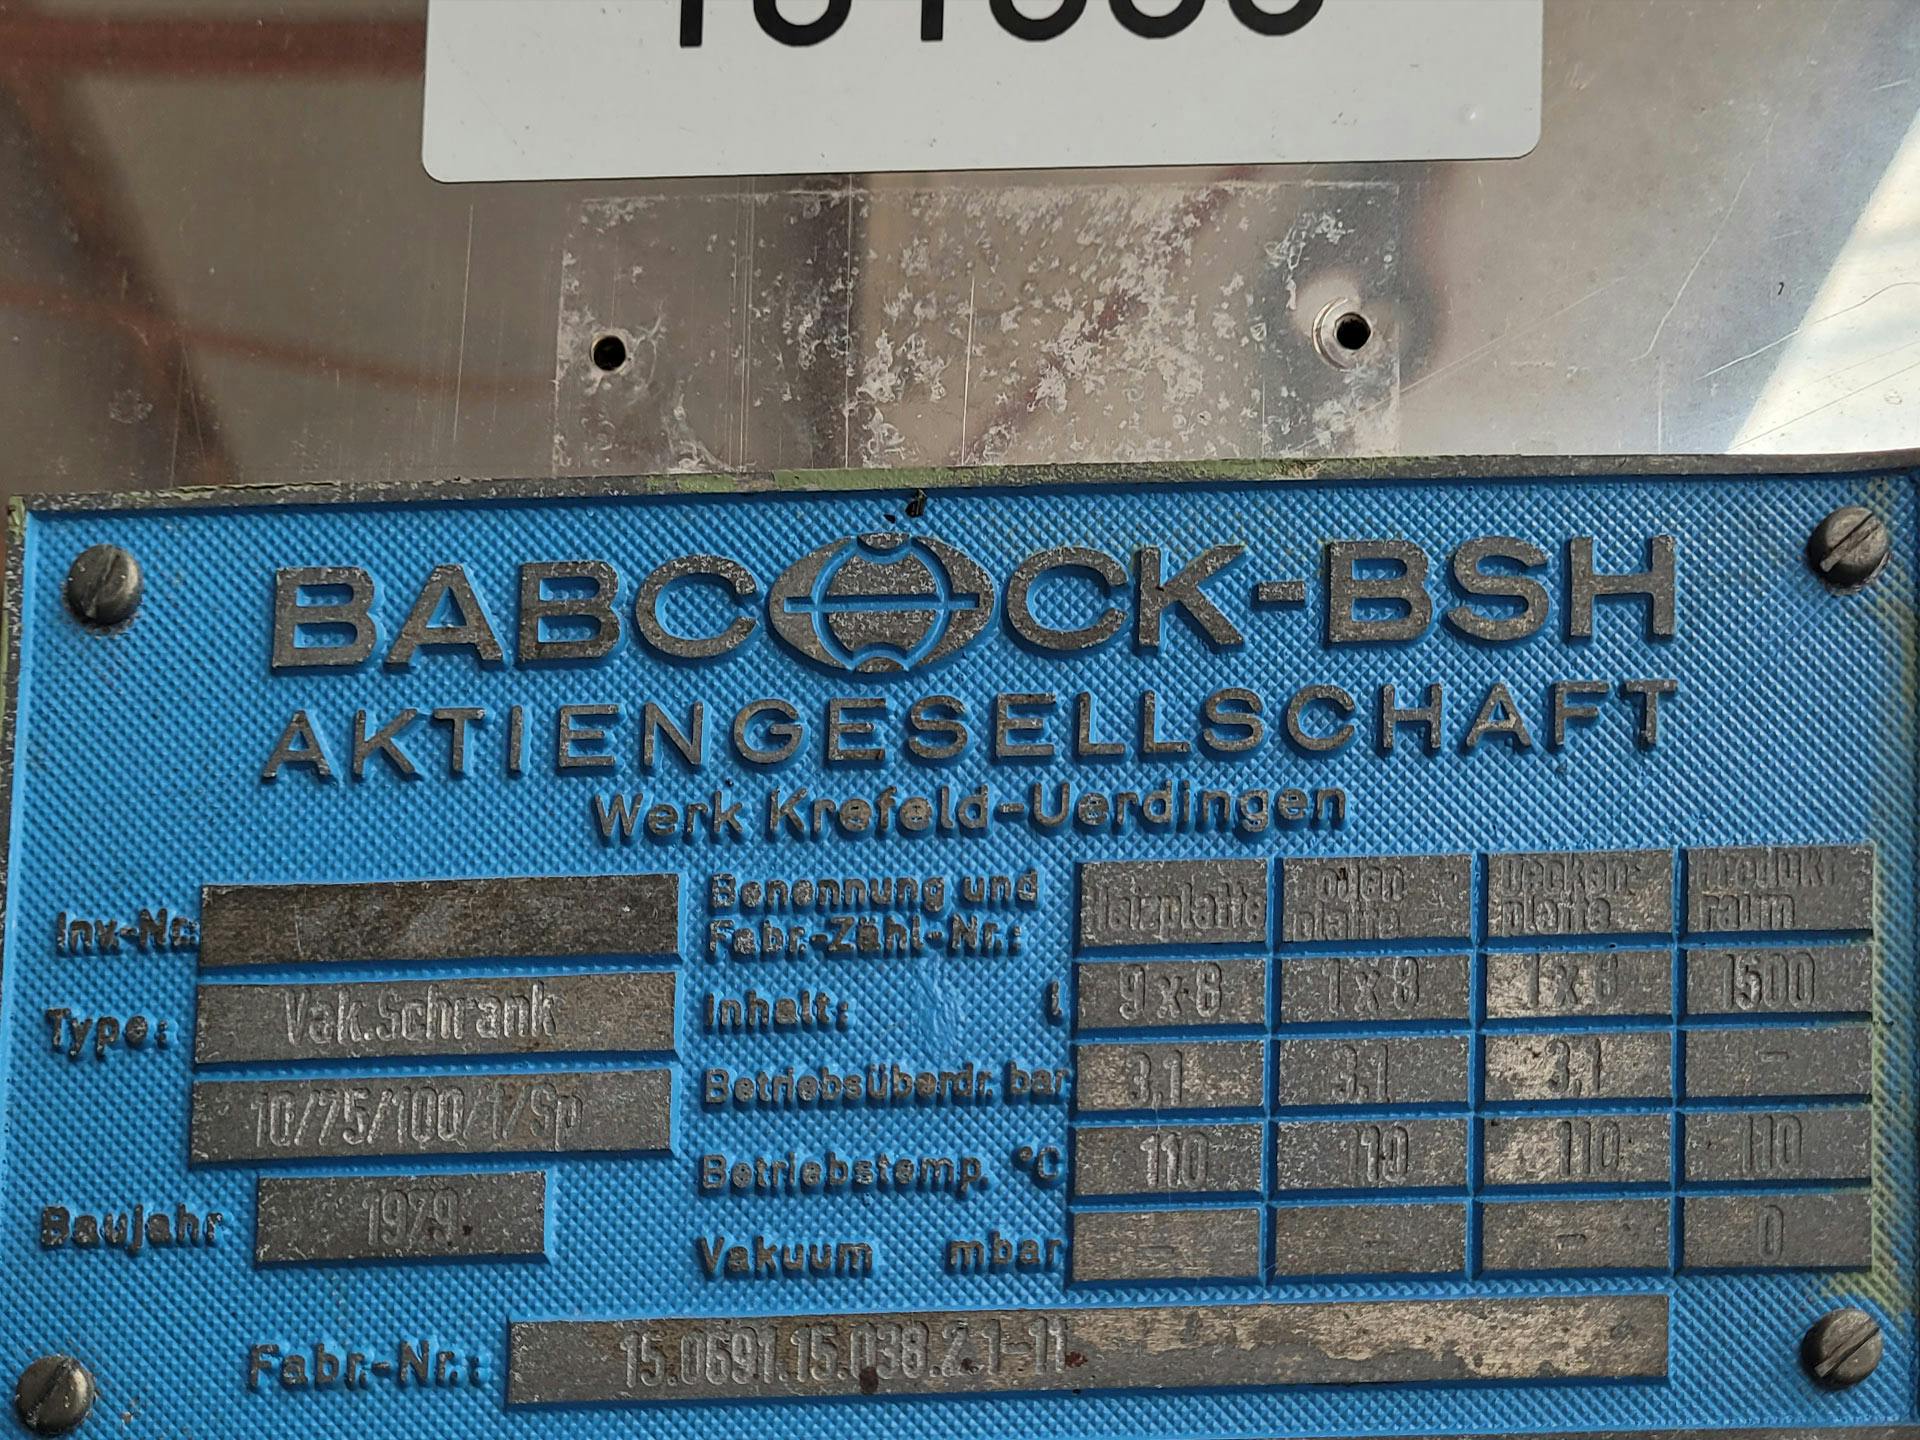 Babcock-BSH 10/75/100/1/SP - Traydroger - image 5